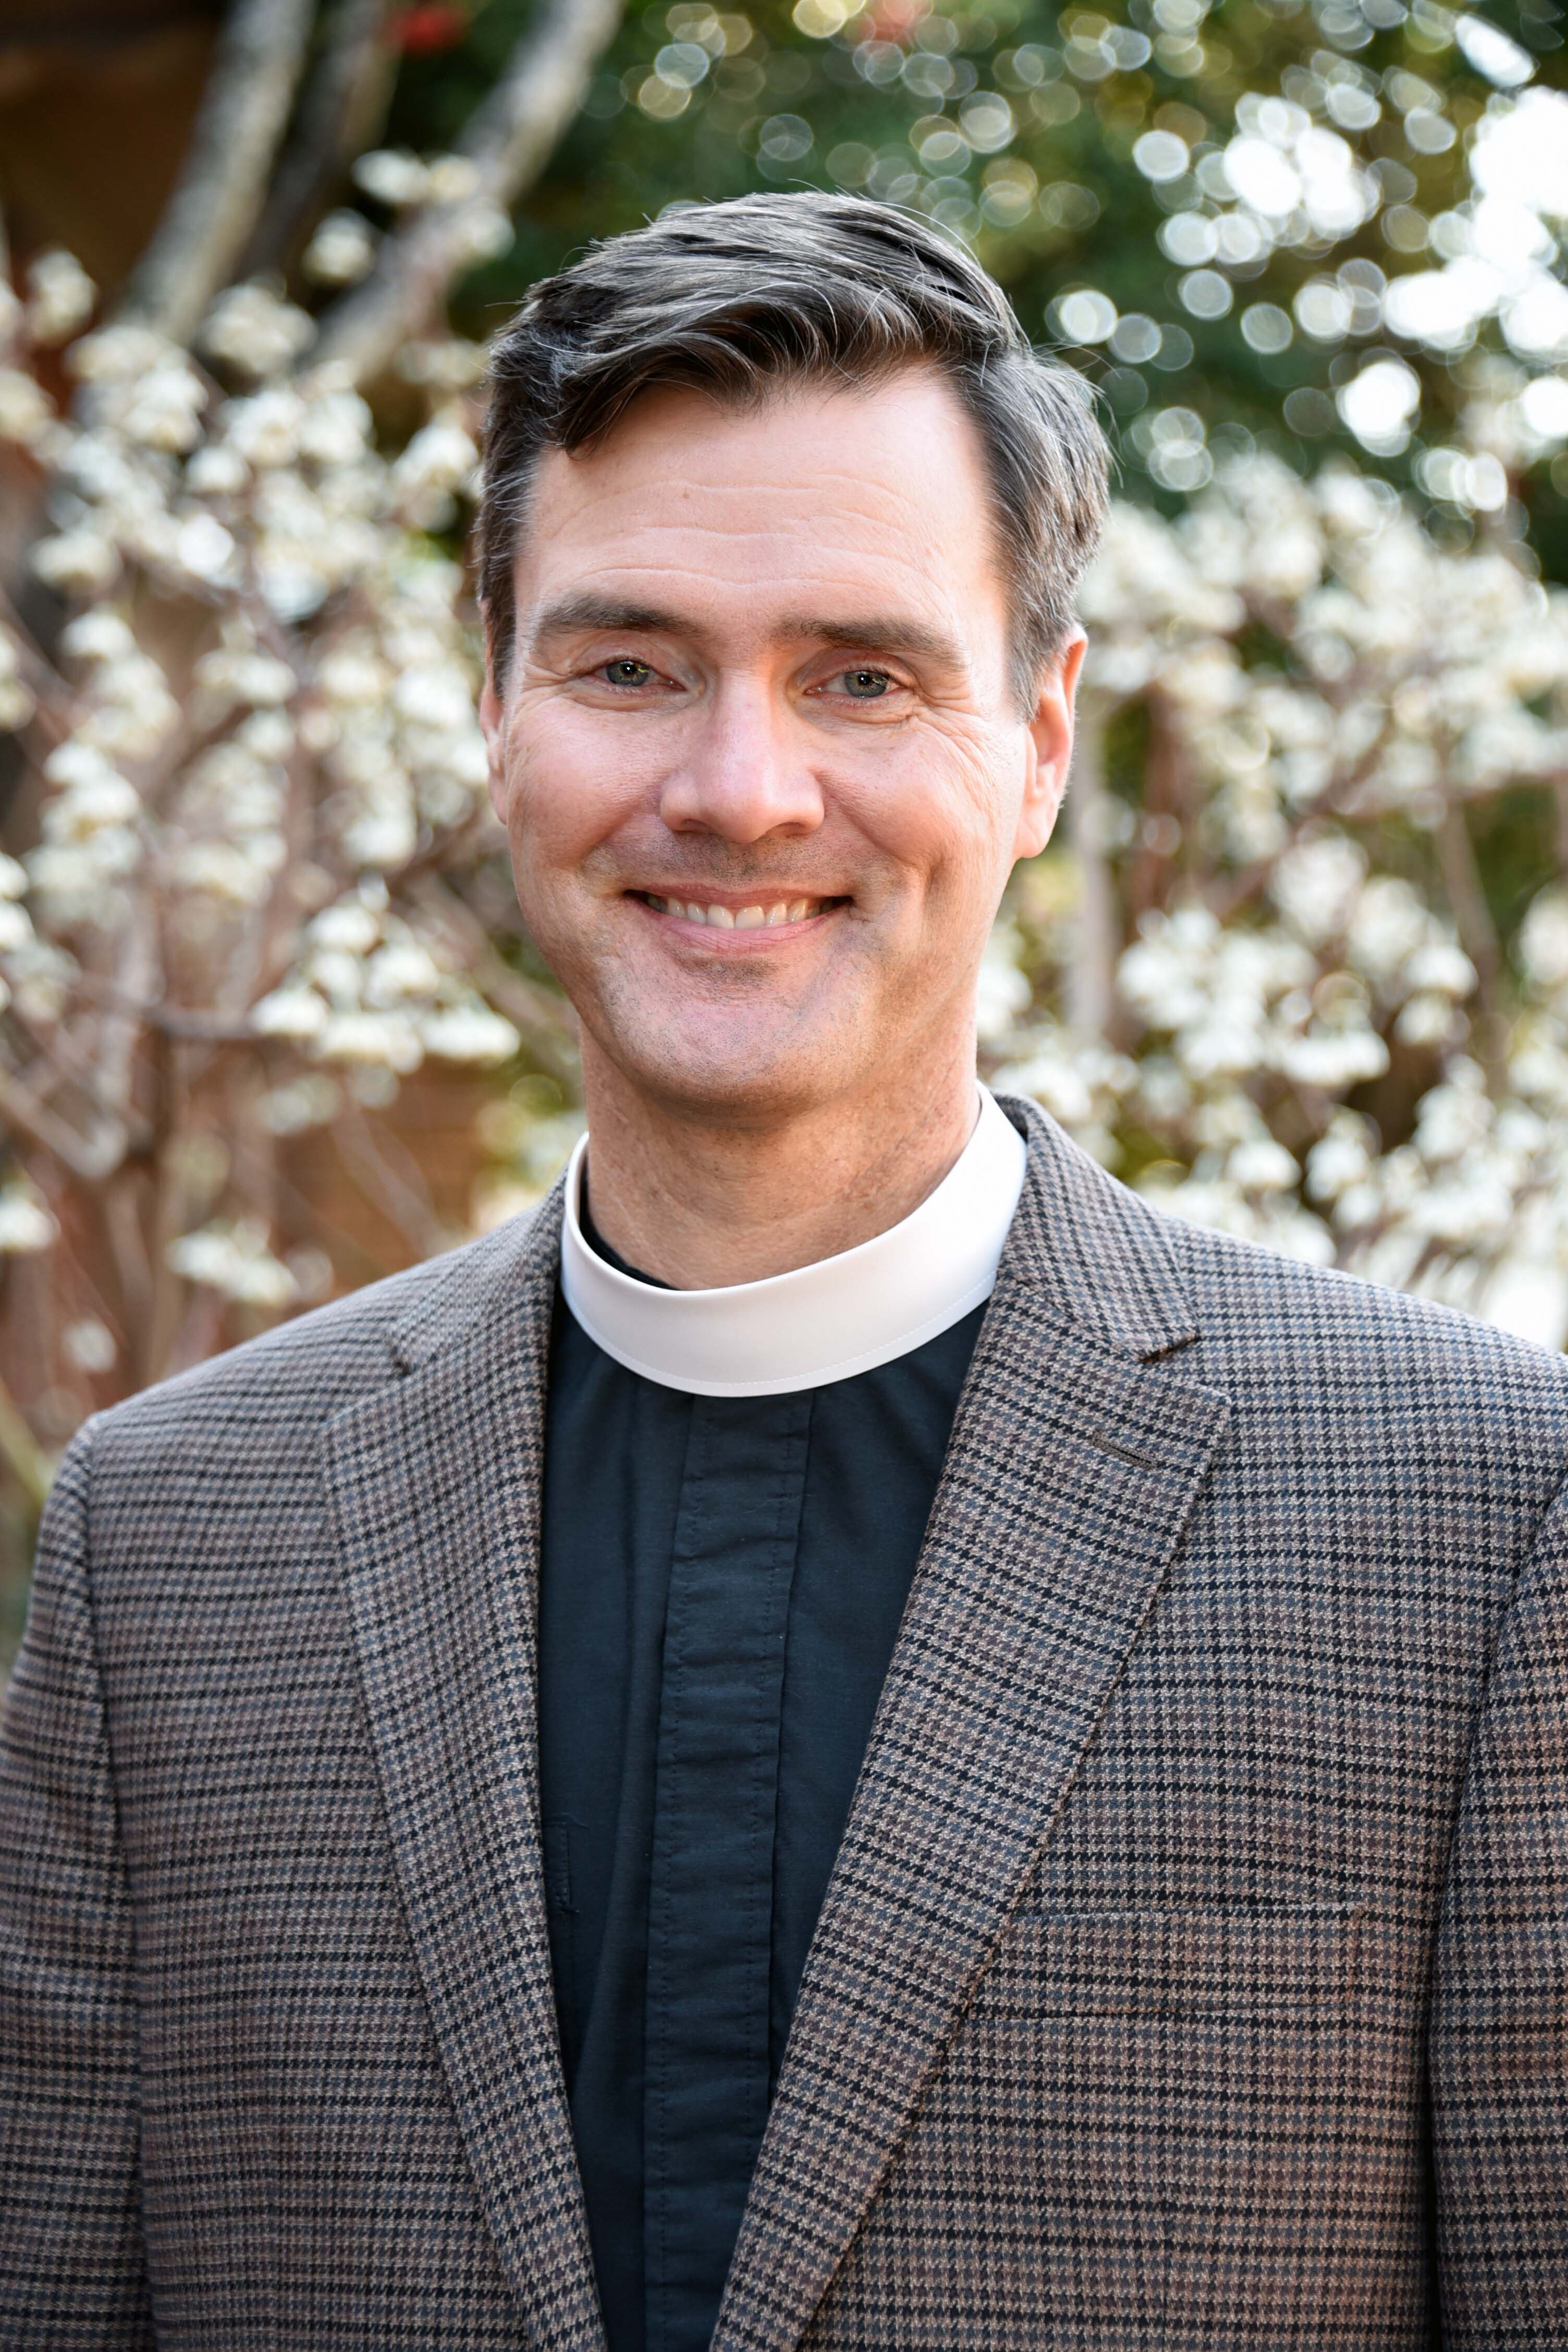 The Rev. Scott Fleischer